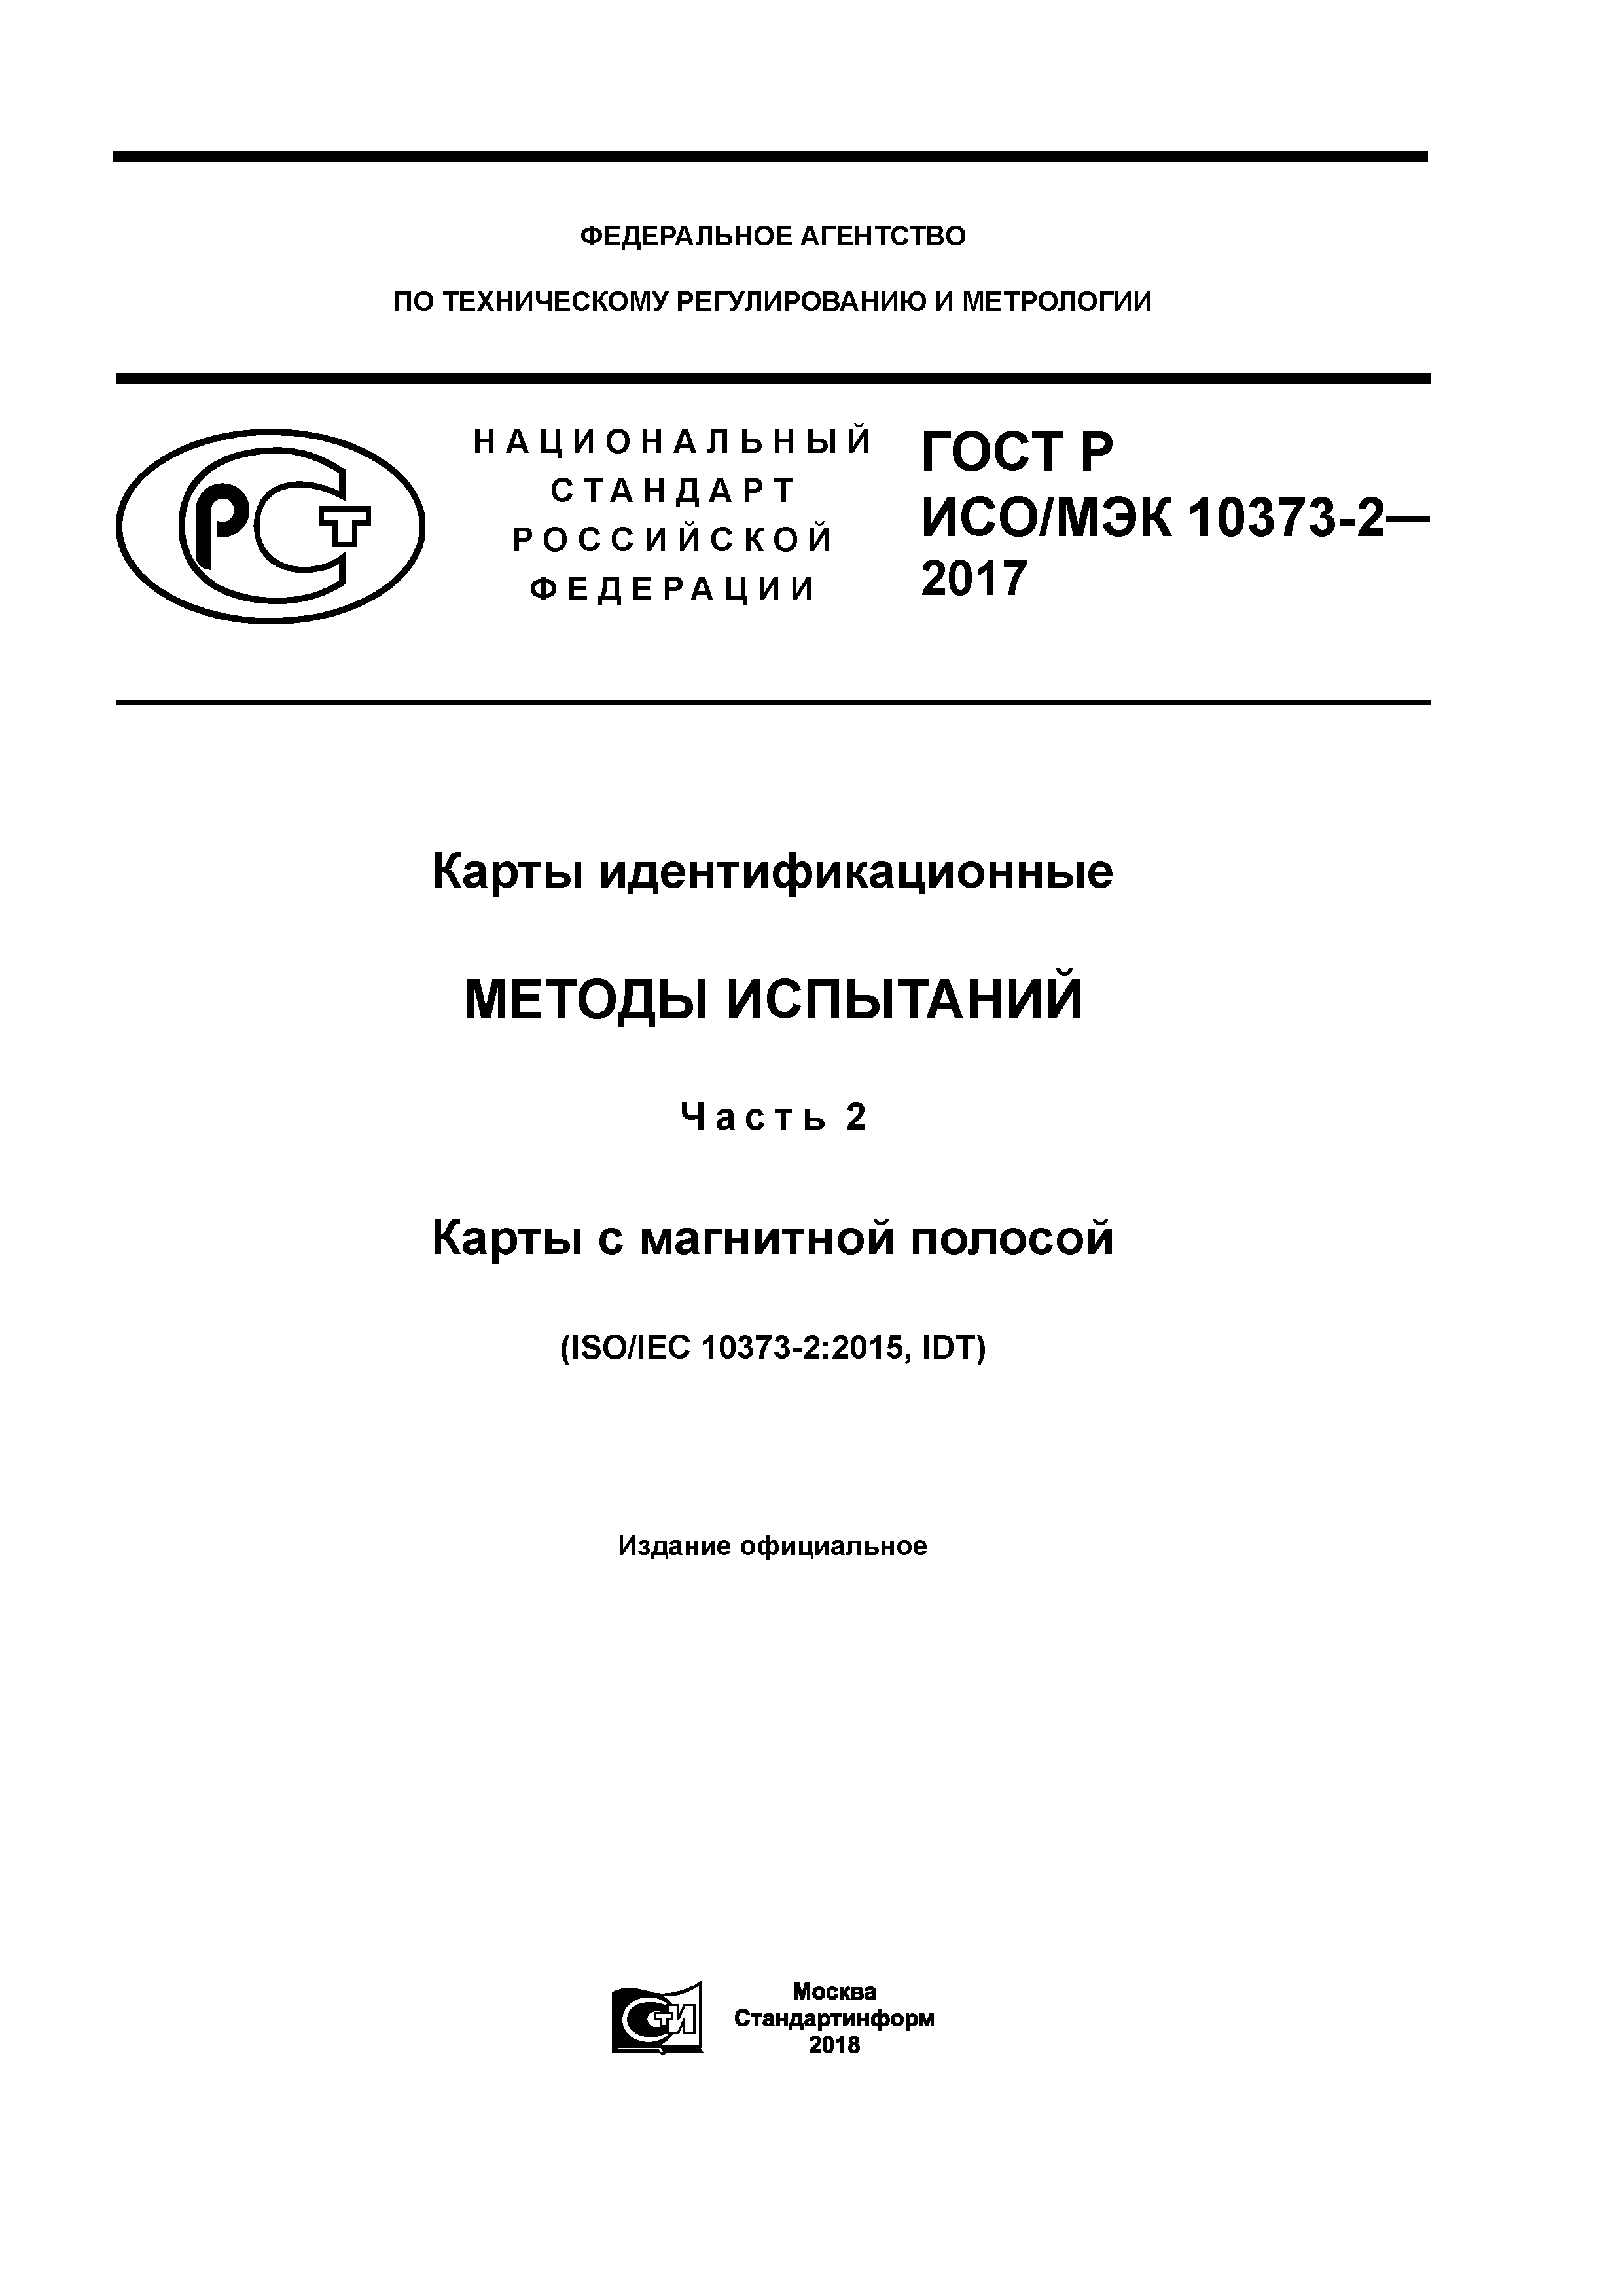 ГОСТ Р ИСО/МЭК 10373-2-2017